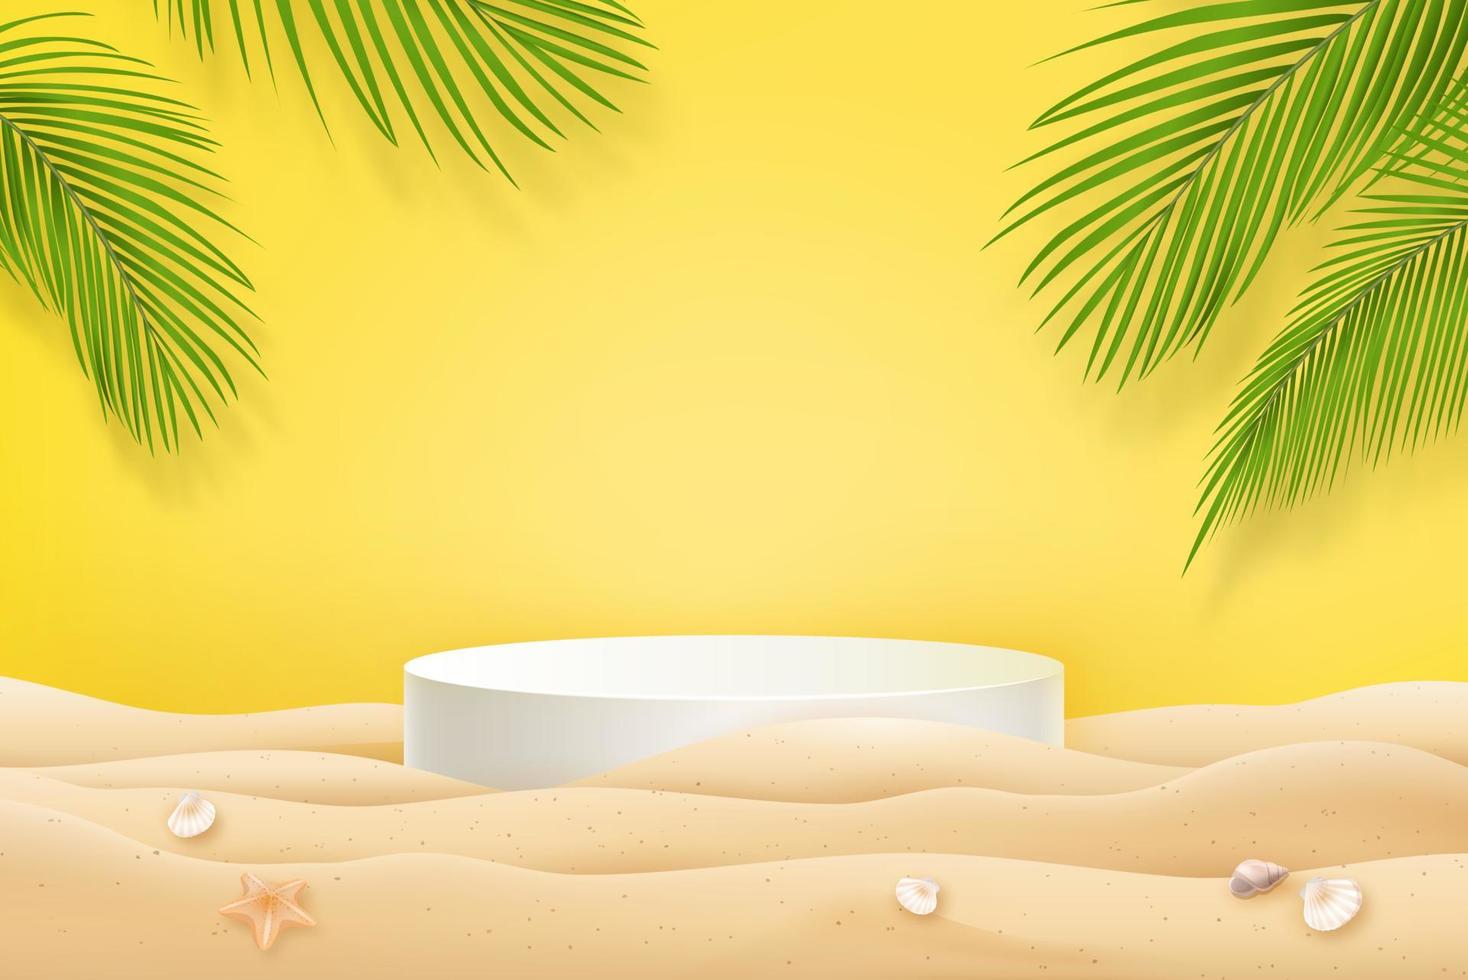 maquette de plage d'été avec podium pour l'affichage du produit sur fond jaune frais vecteur